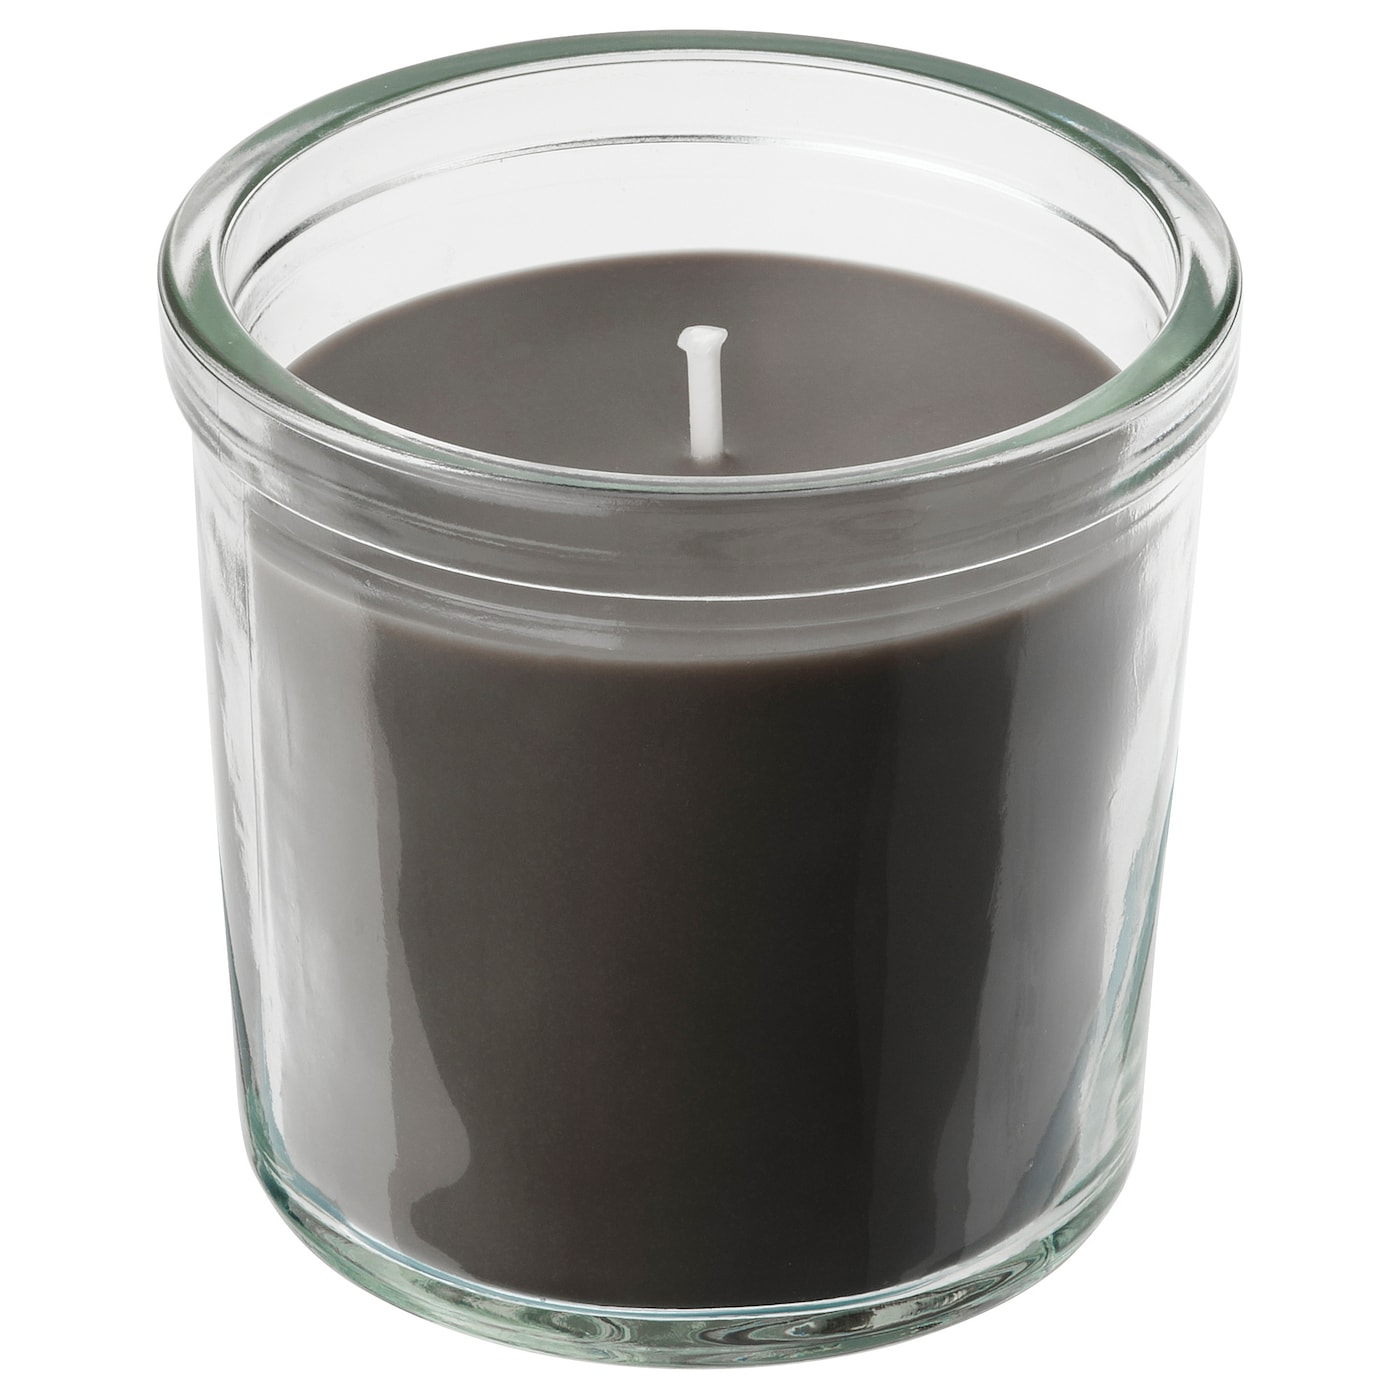 ENSTAKA ЭНСТАКА Ароматическая свеча в стакане, Костер/серый, 20 ч IKEA